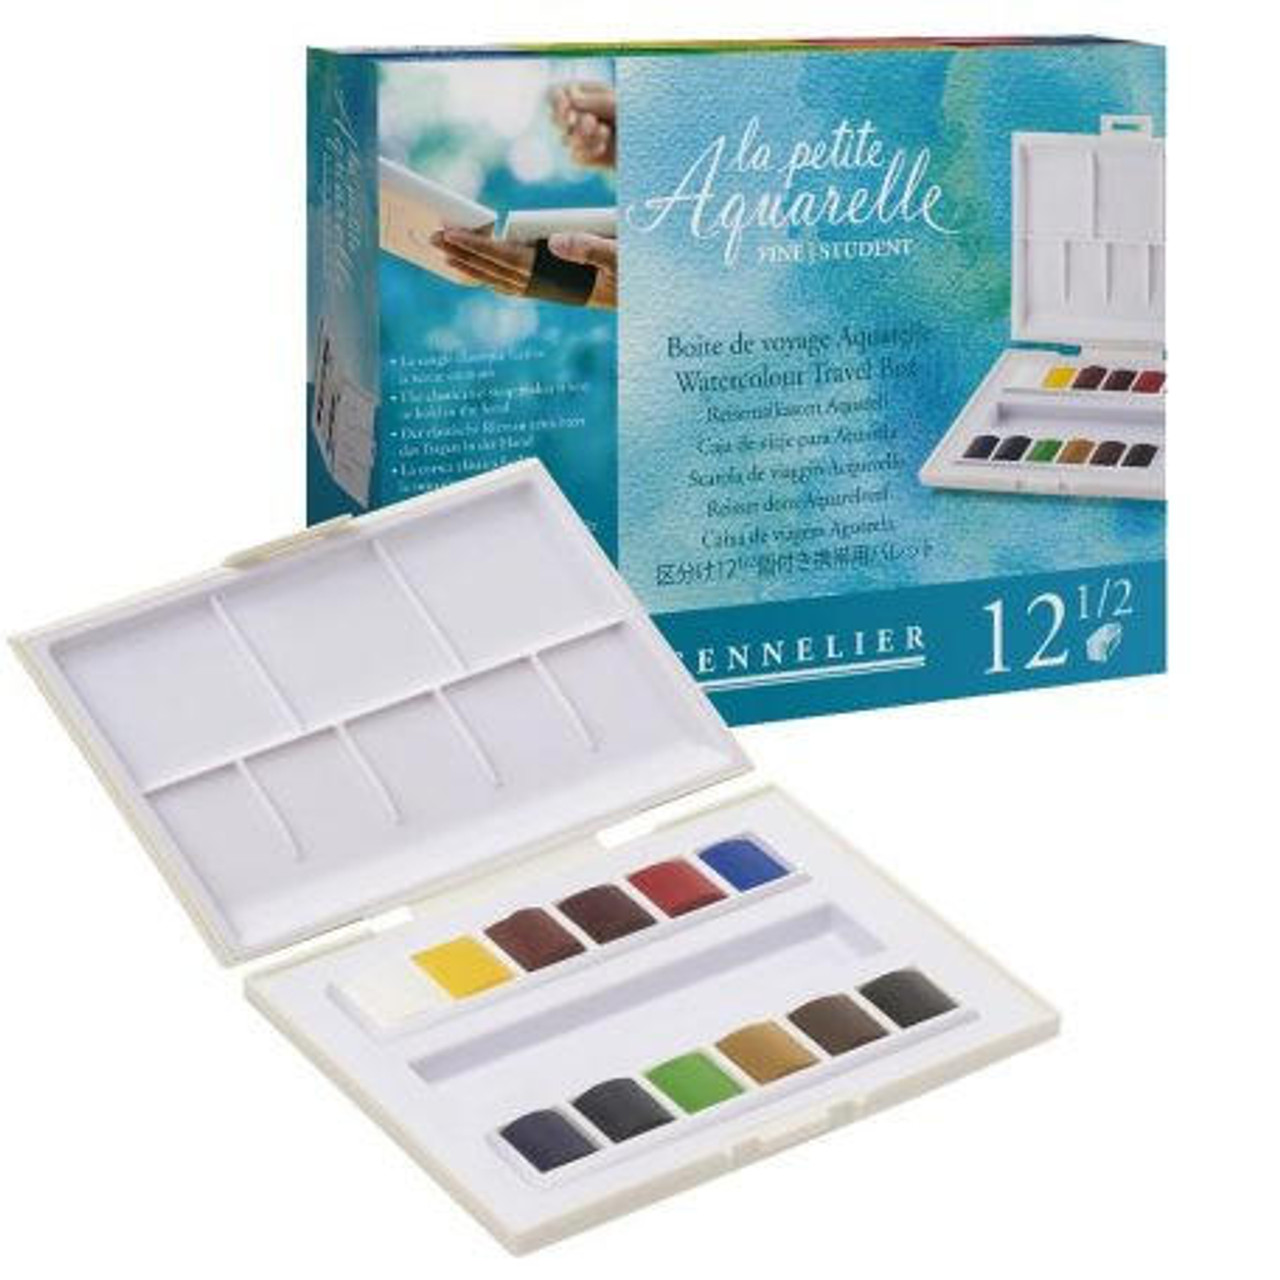 Sennelier La Petite Aquarelle Travel Box Watercolor Sets